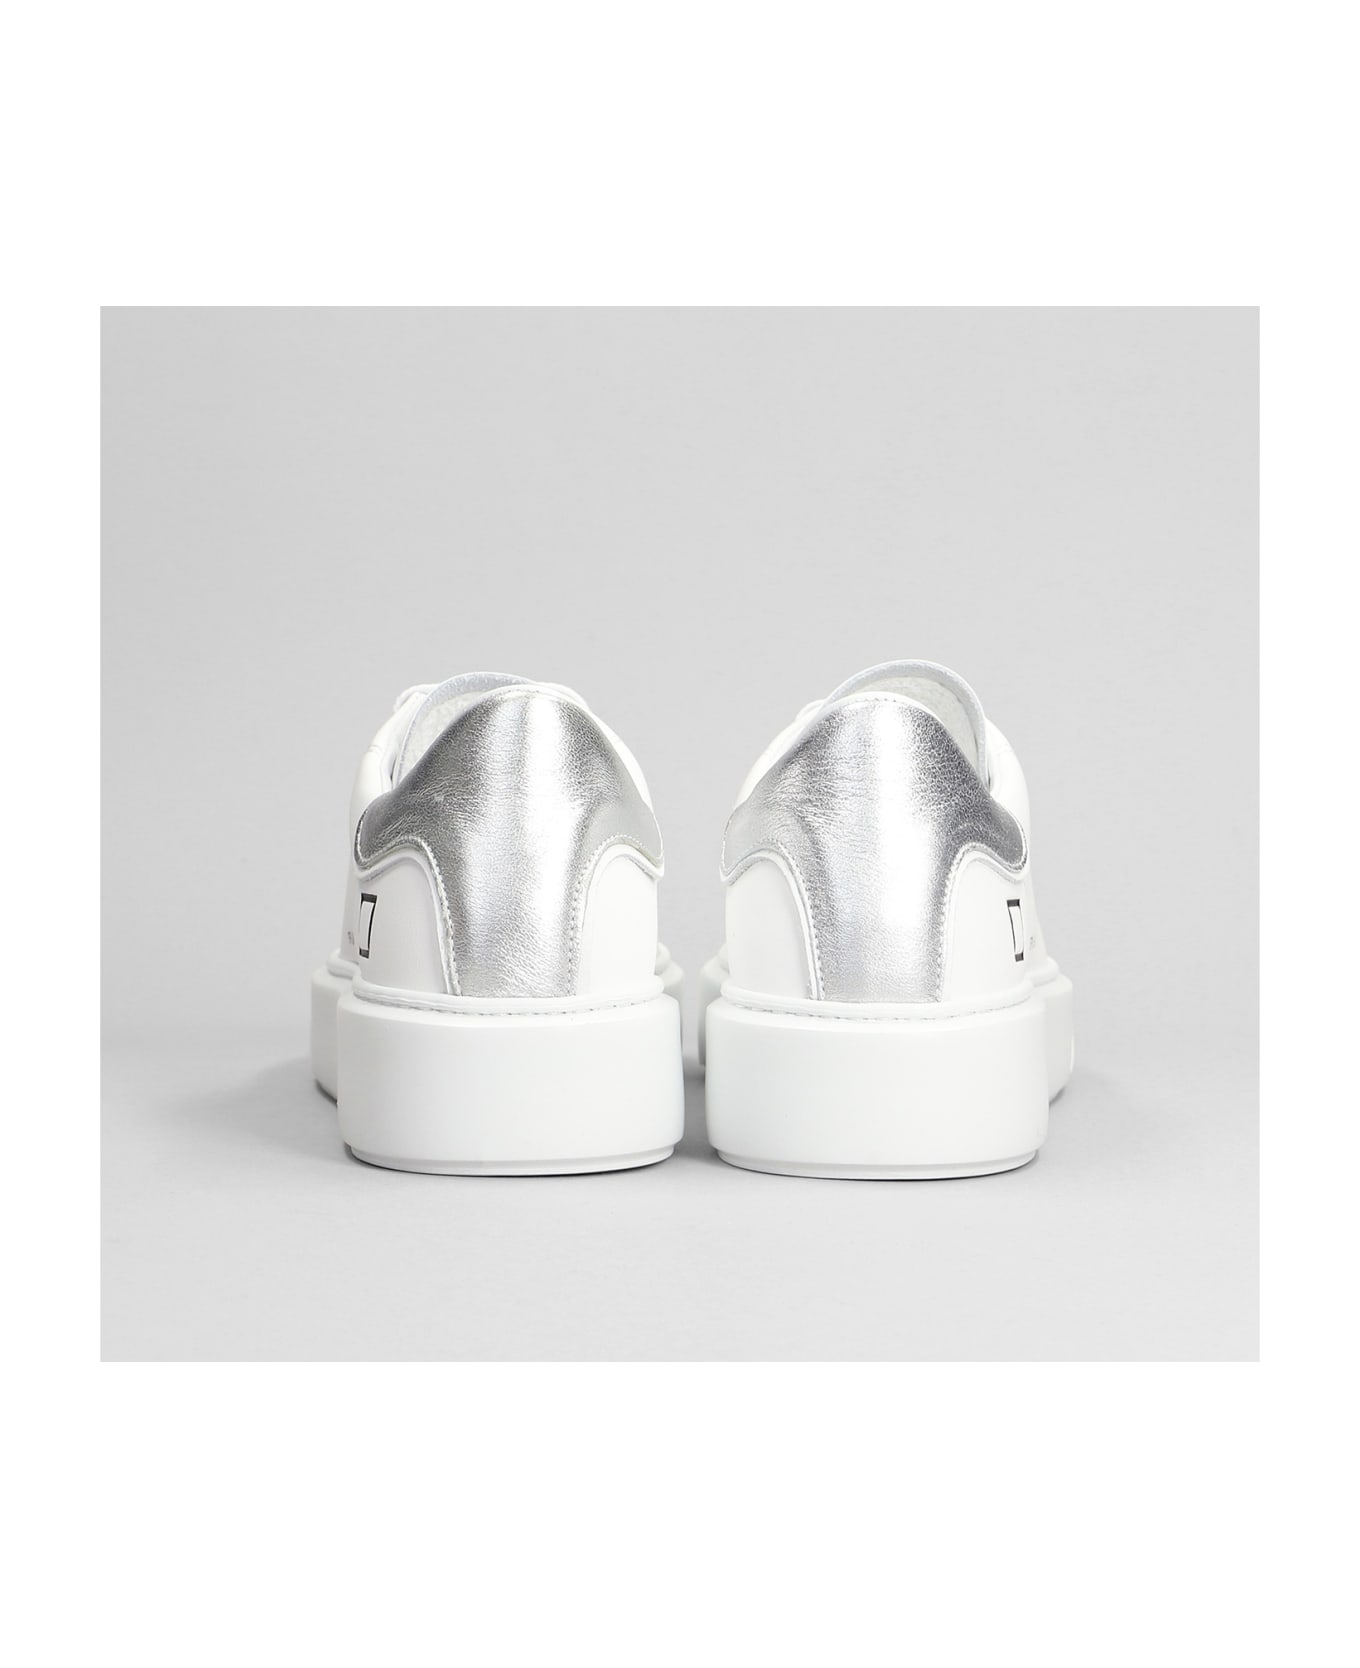 D.A.T.E. Sfera Sneakers In White Leather - white